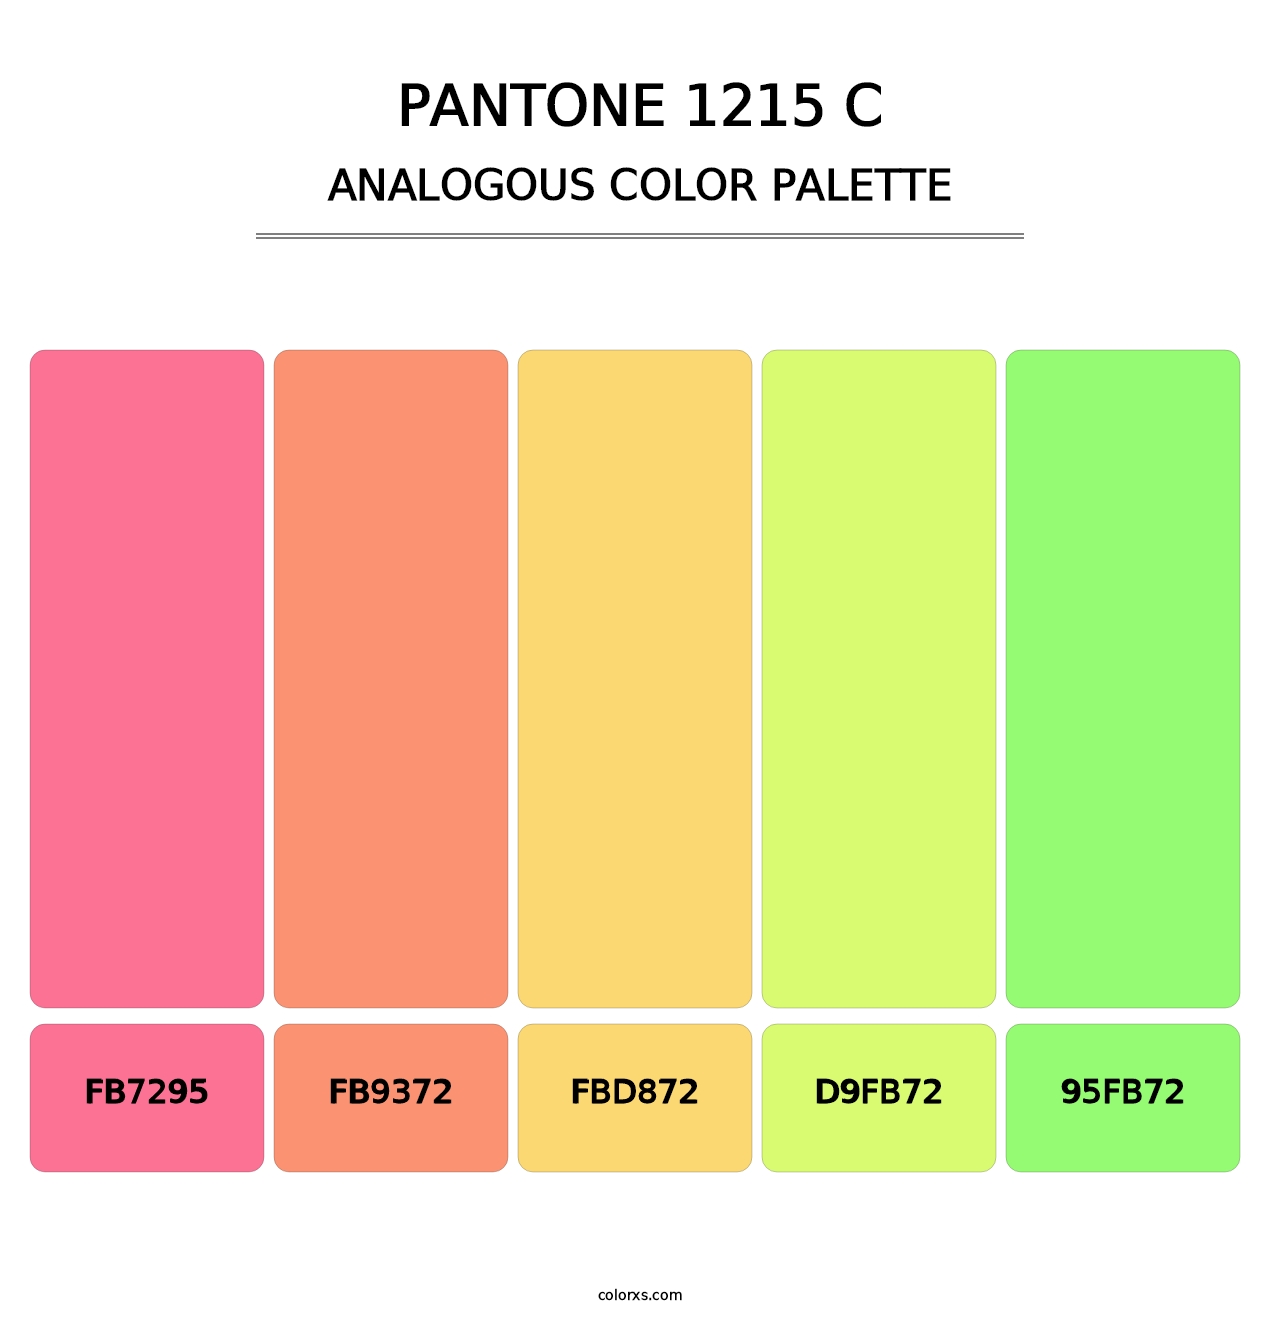 PANTONE 1215 C - Analogous Color Palette